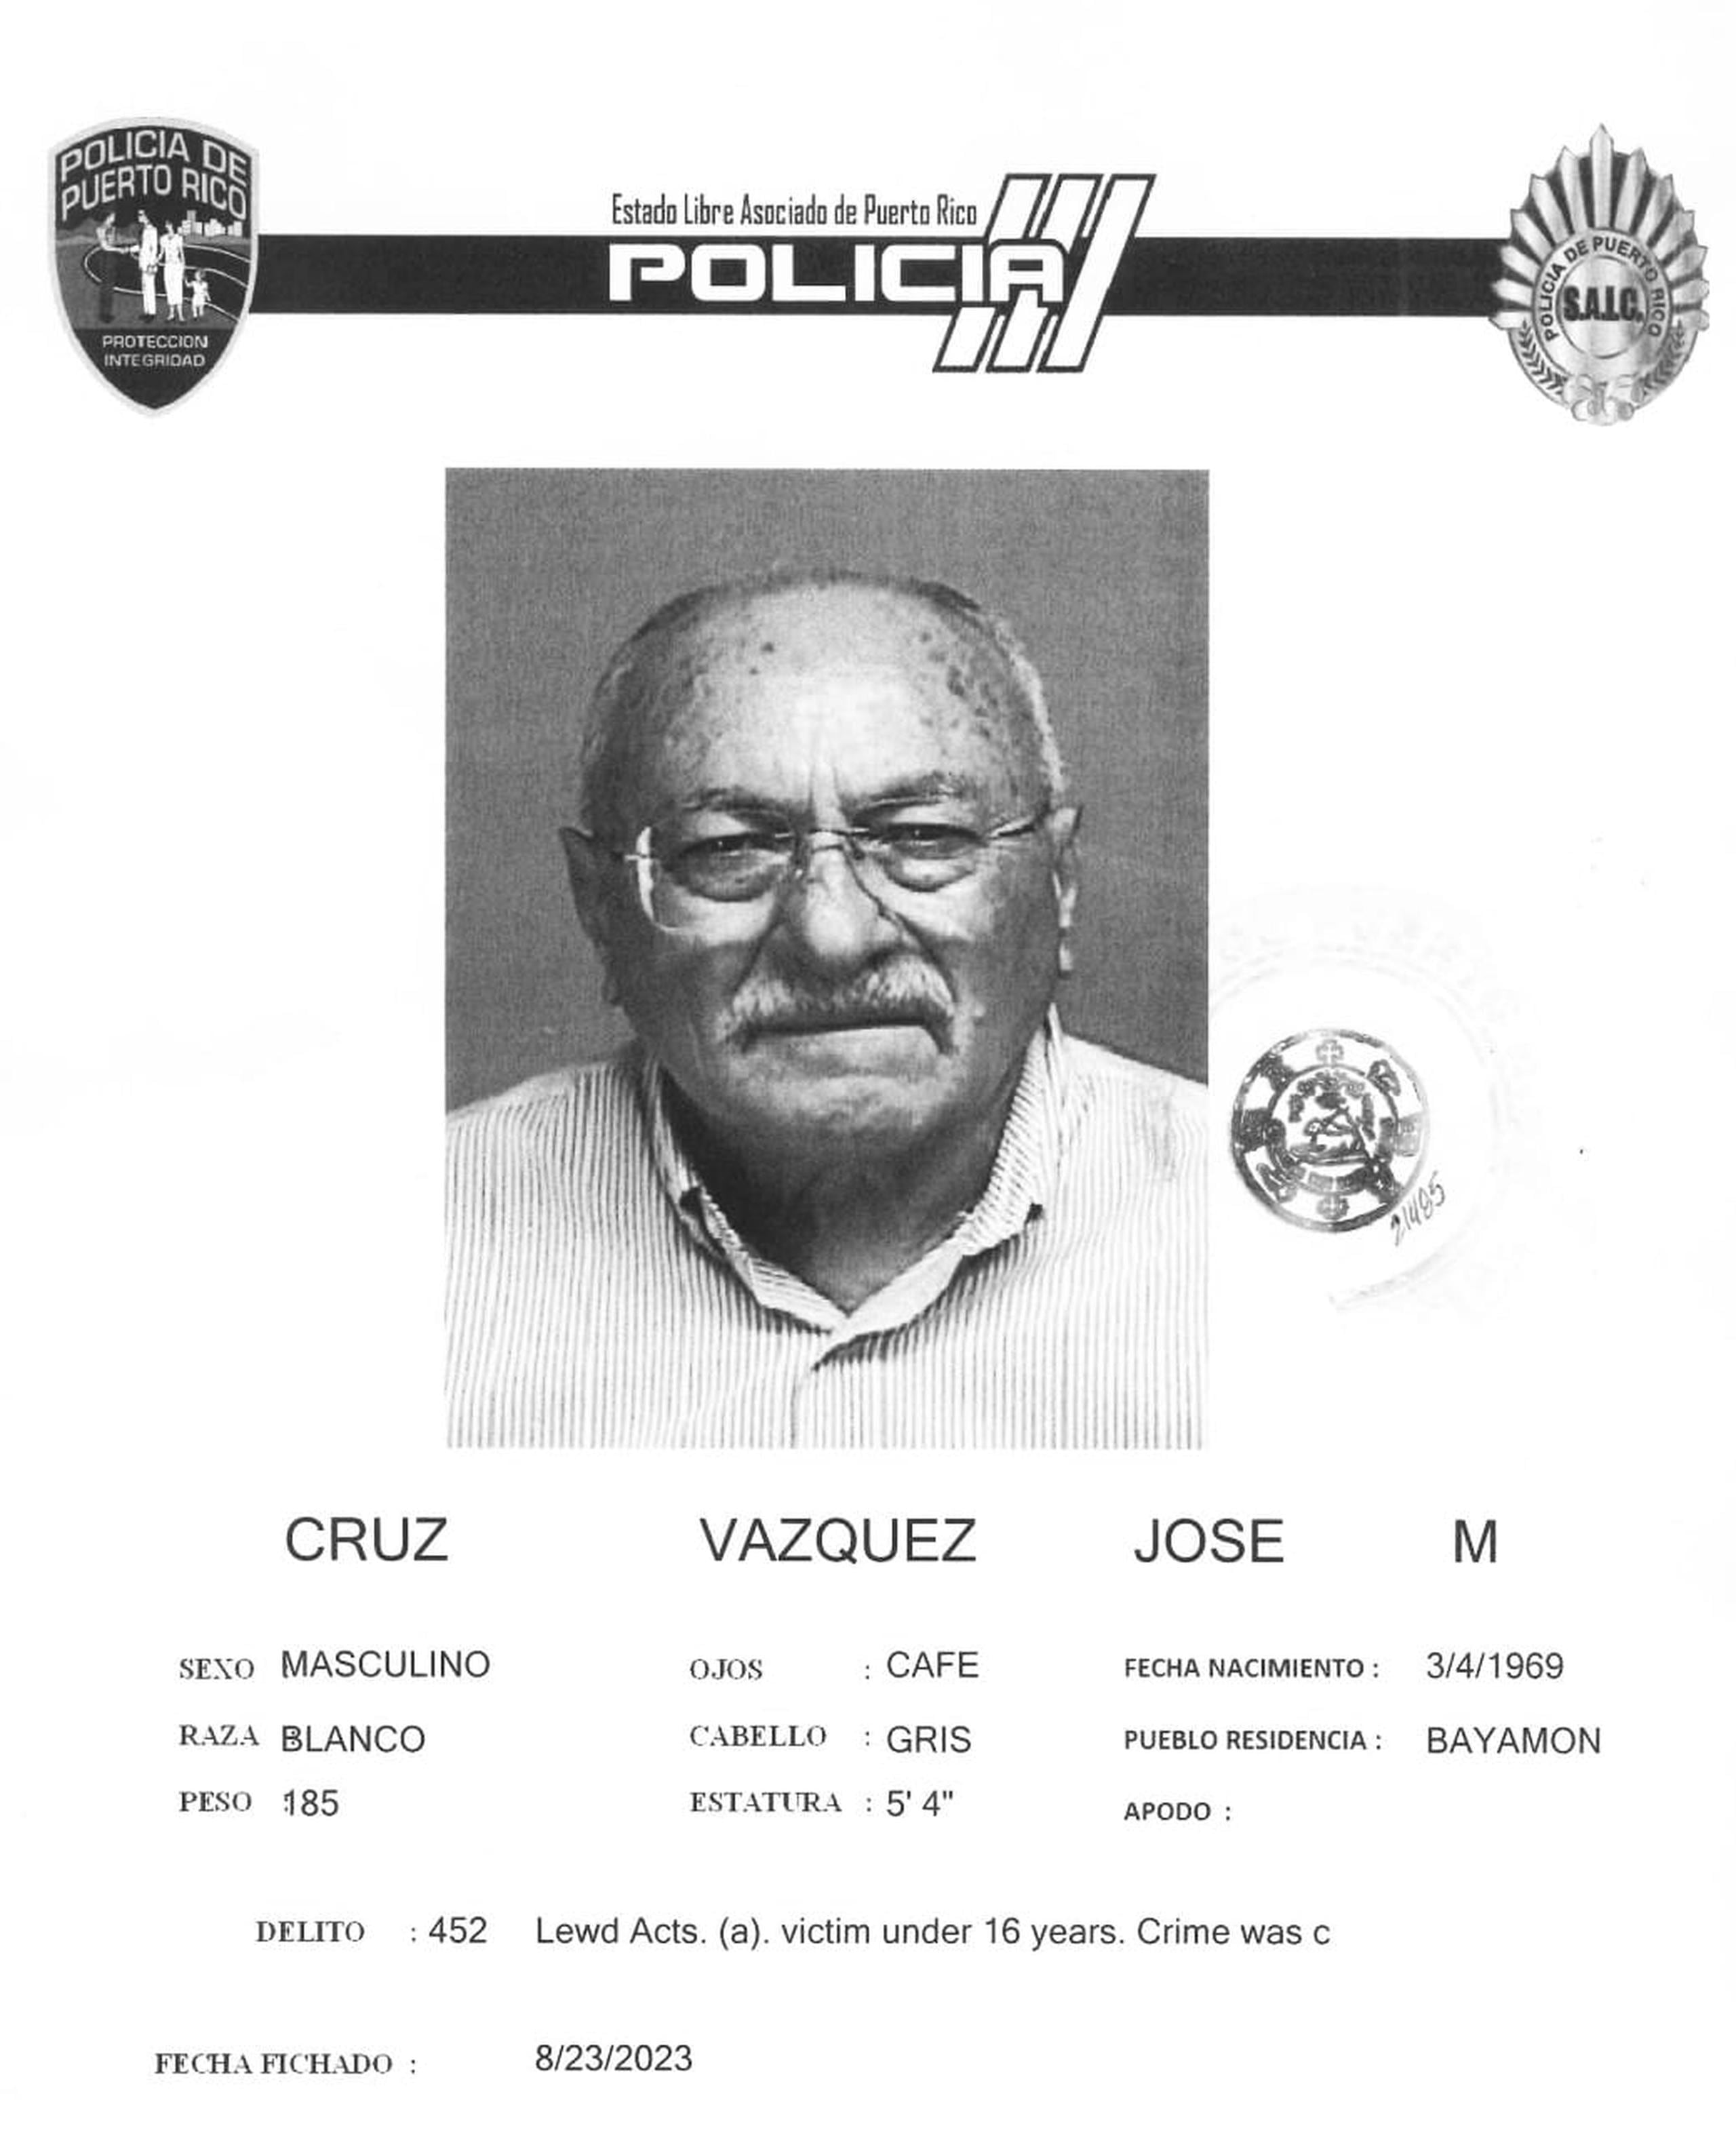 José M. Cruz Vázquez enfrenta un cargo de actos lascivos contra una niña.